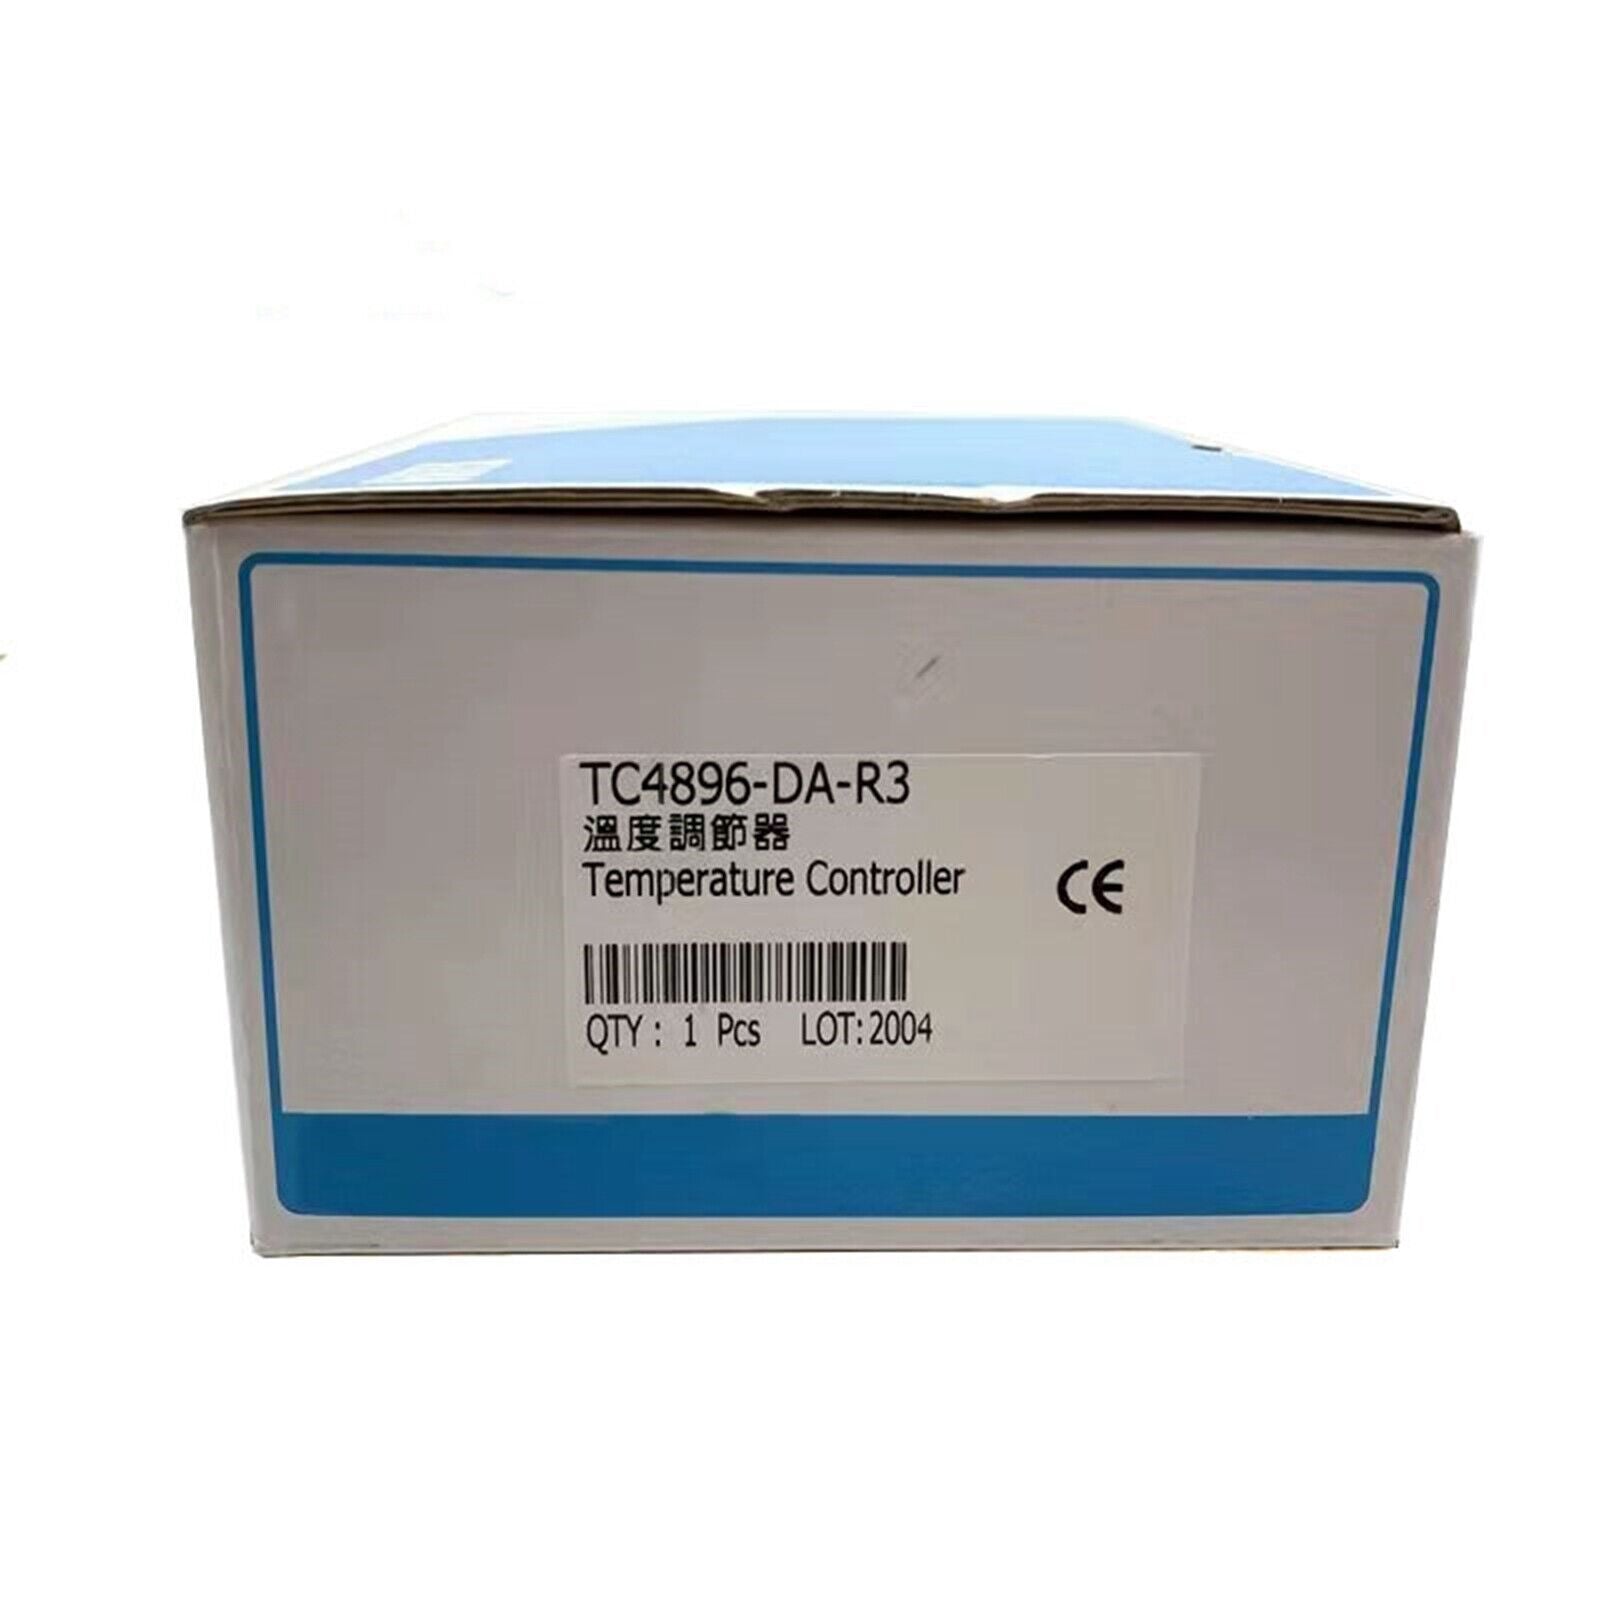 FOTEK TC4896-DA-R3 Temperature Controller